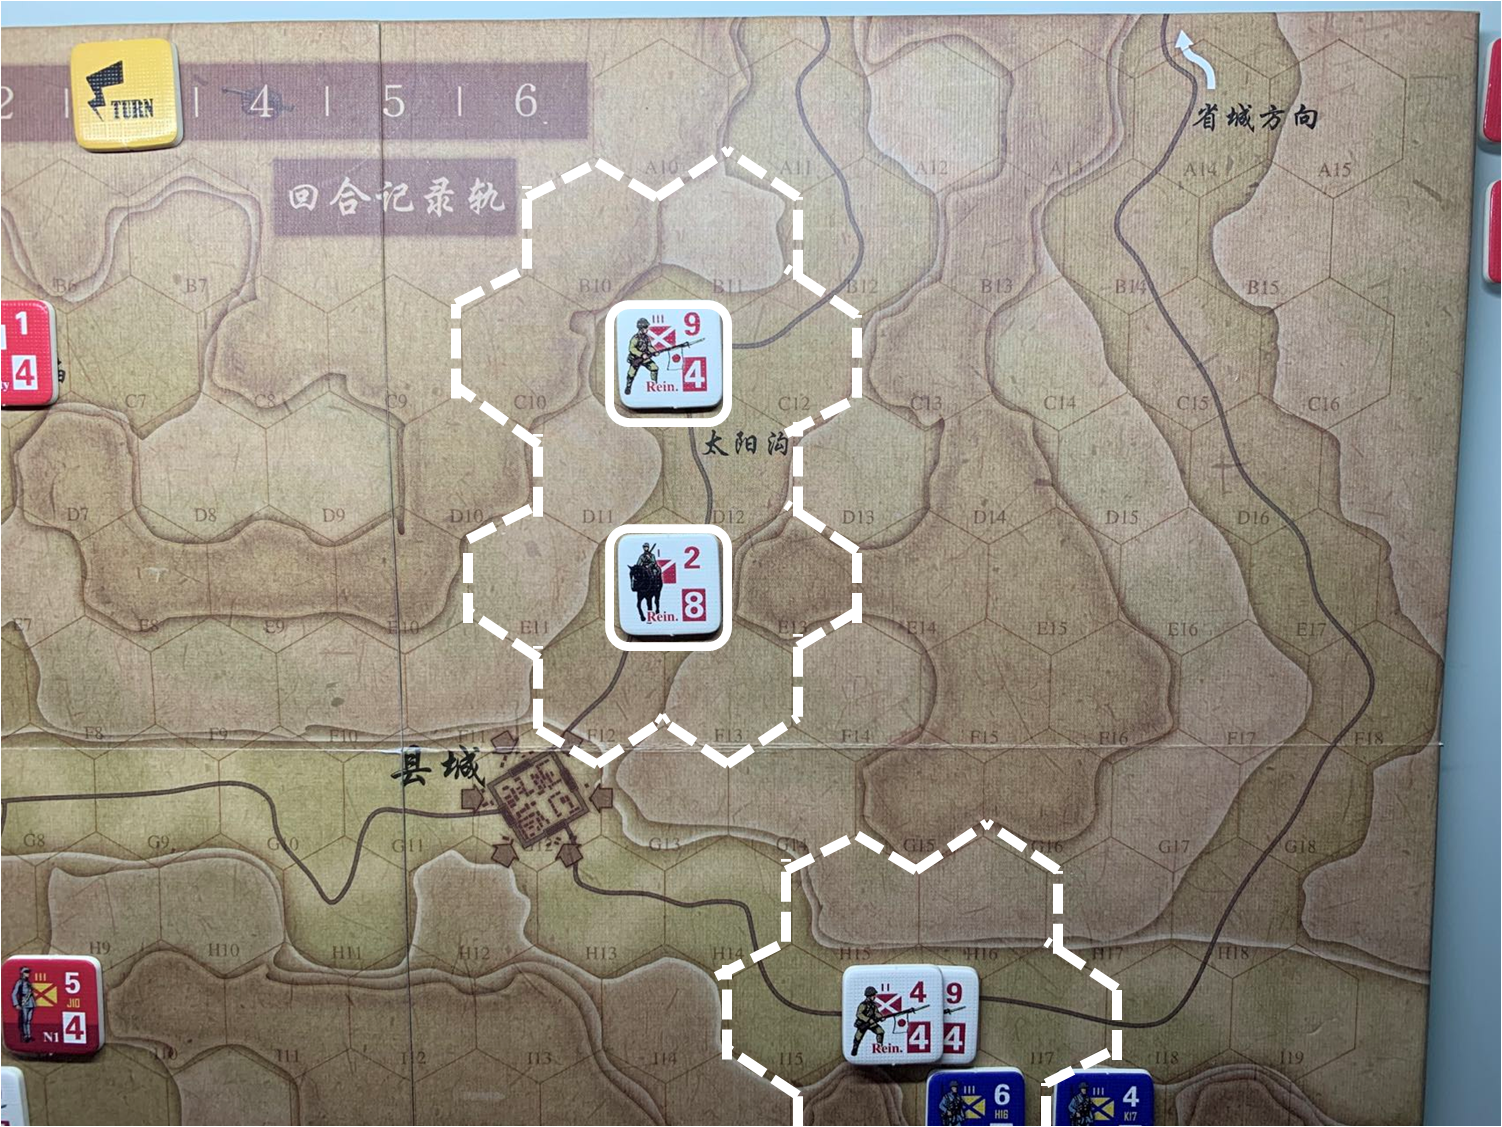 第三回合省城方向日軍增援部隊（C11、E12）對於移動命令3的執行結果，及兩方向日軍增援部隊控制區覆蓋範圍